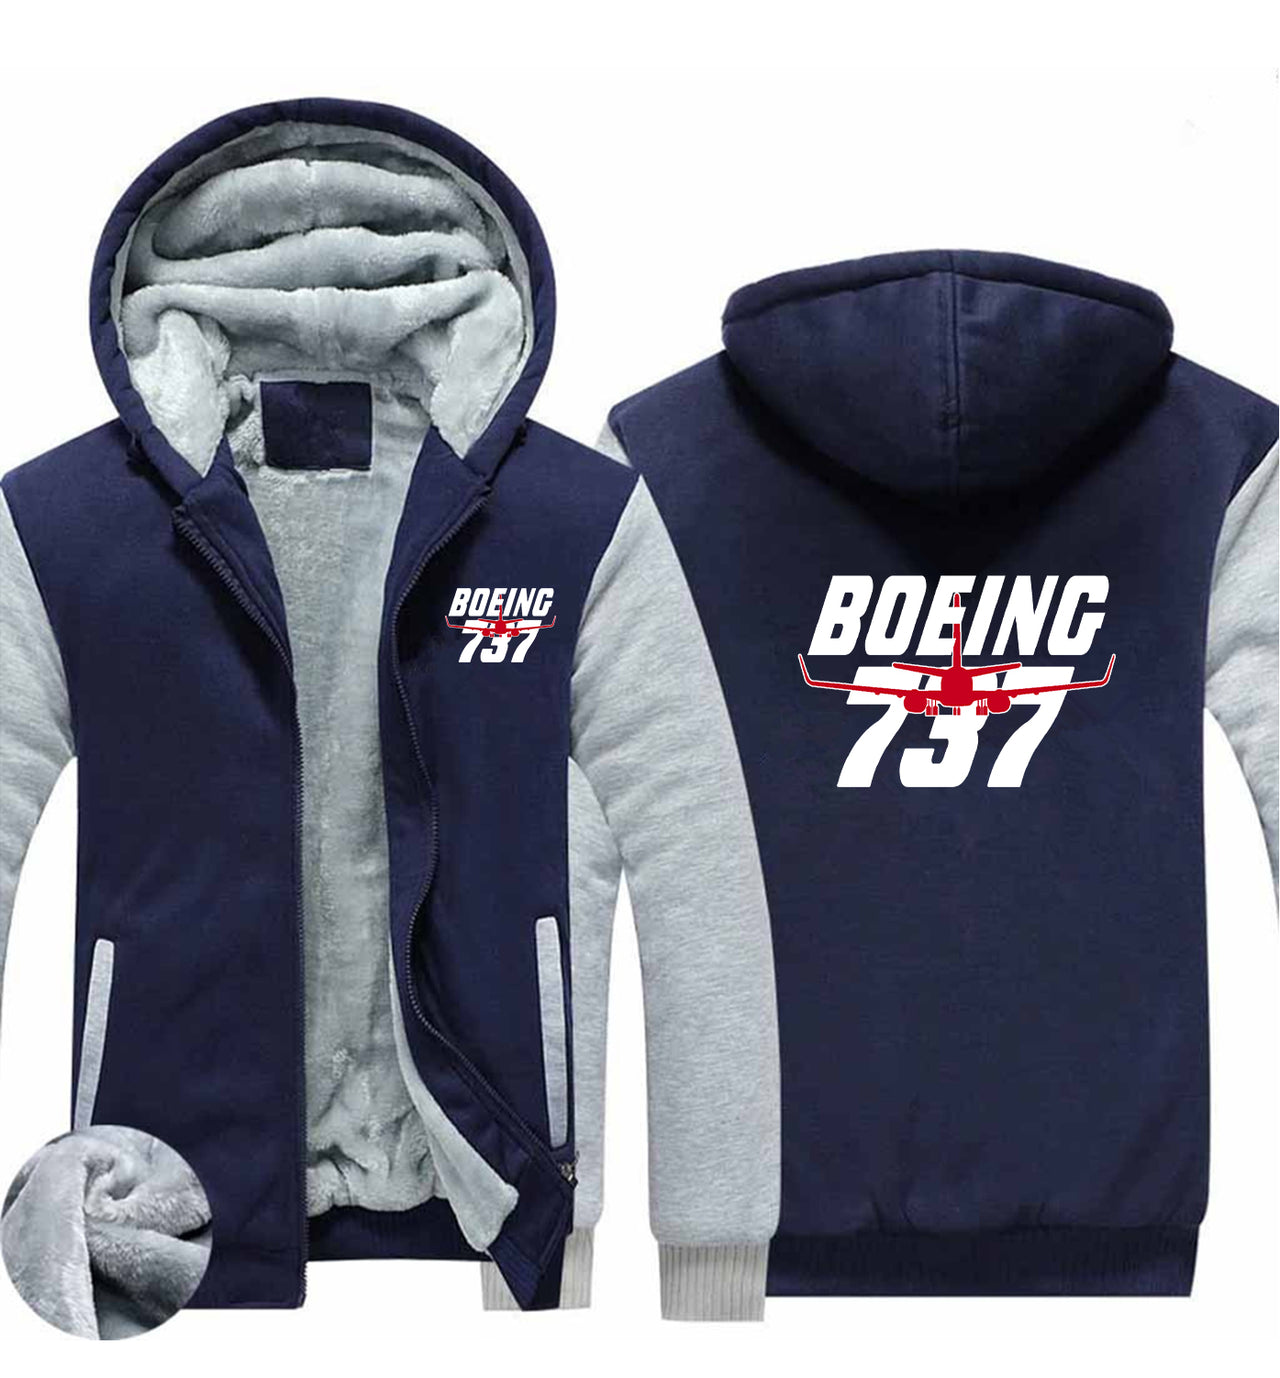 Amazing Boeing 737 Designed Zipped Sweatshirts